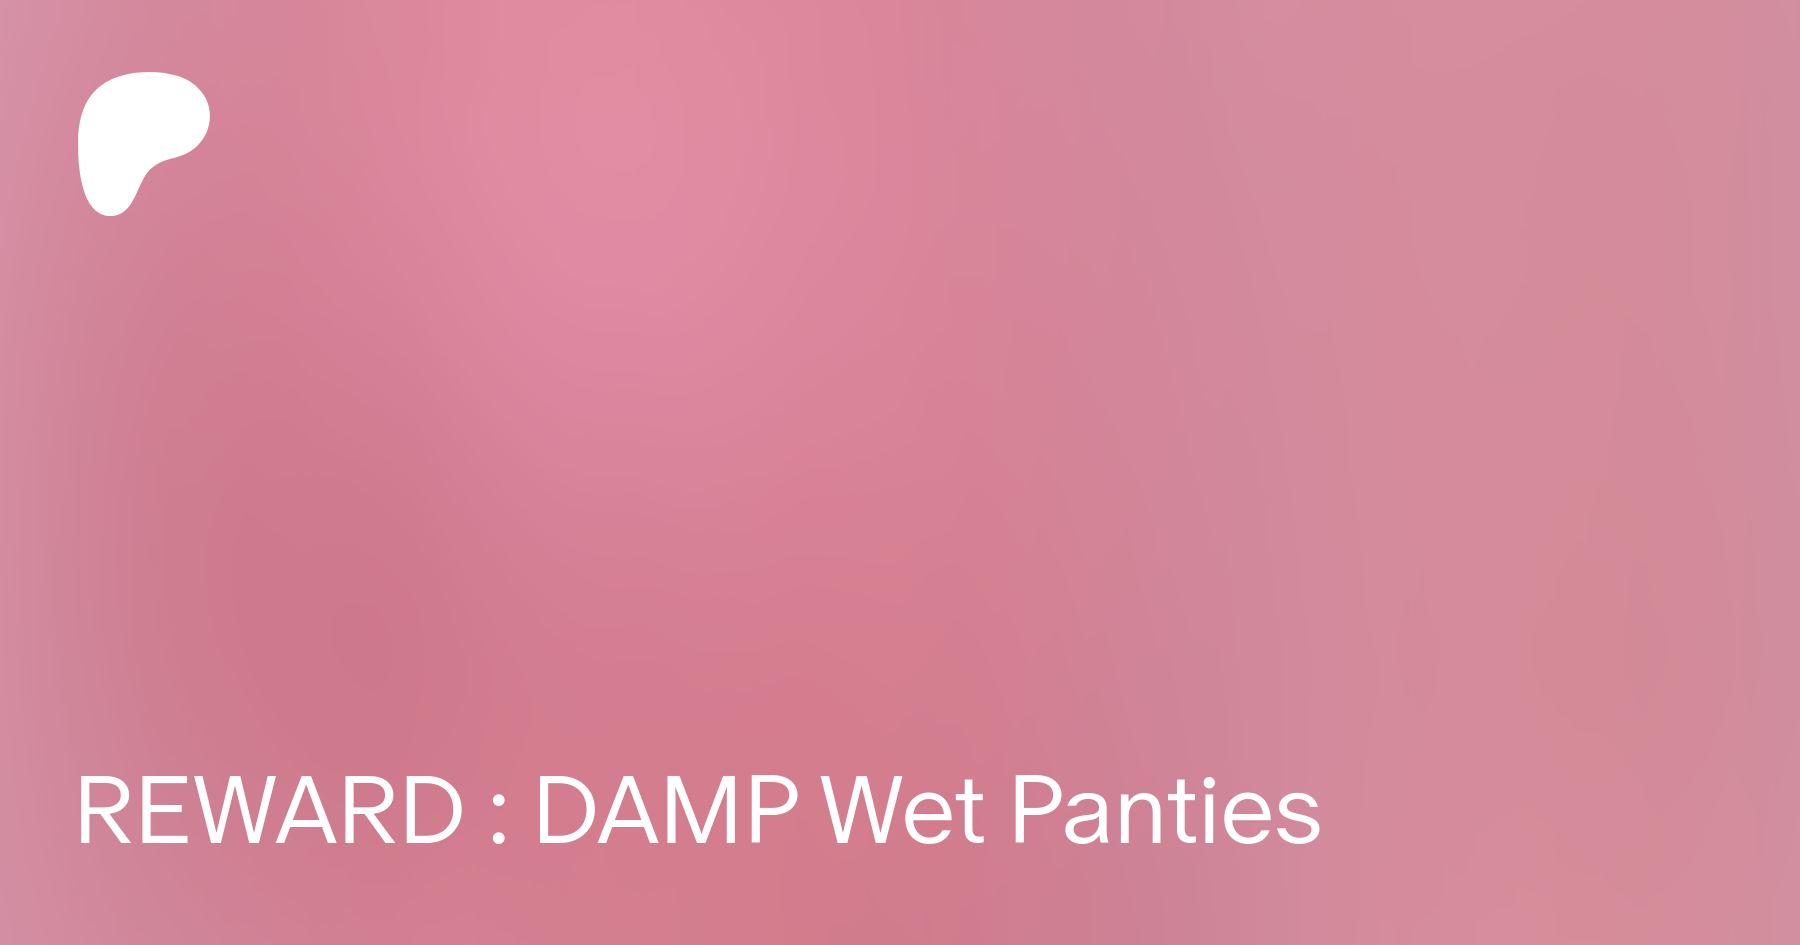 Teaser Tuesday: Wet Panties